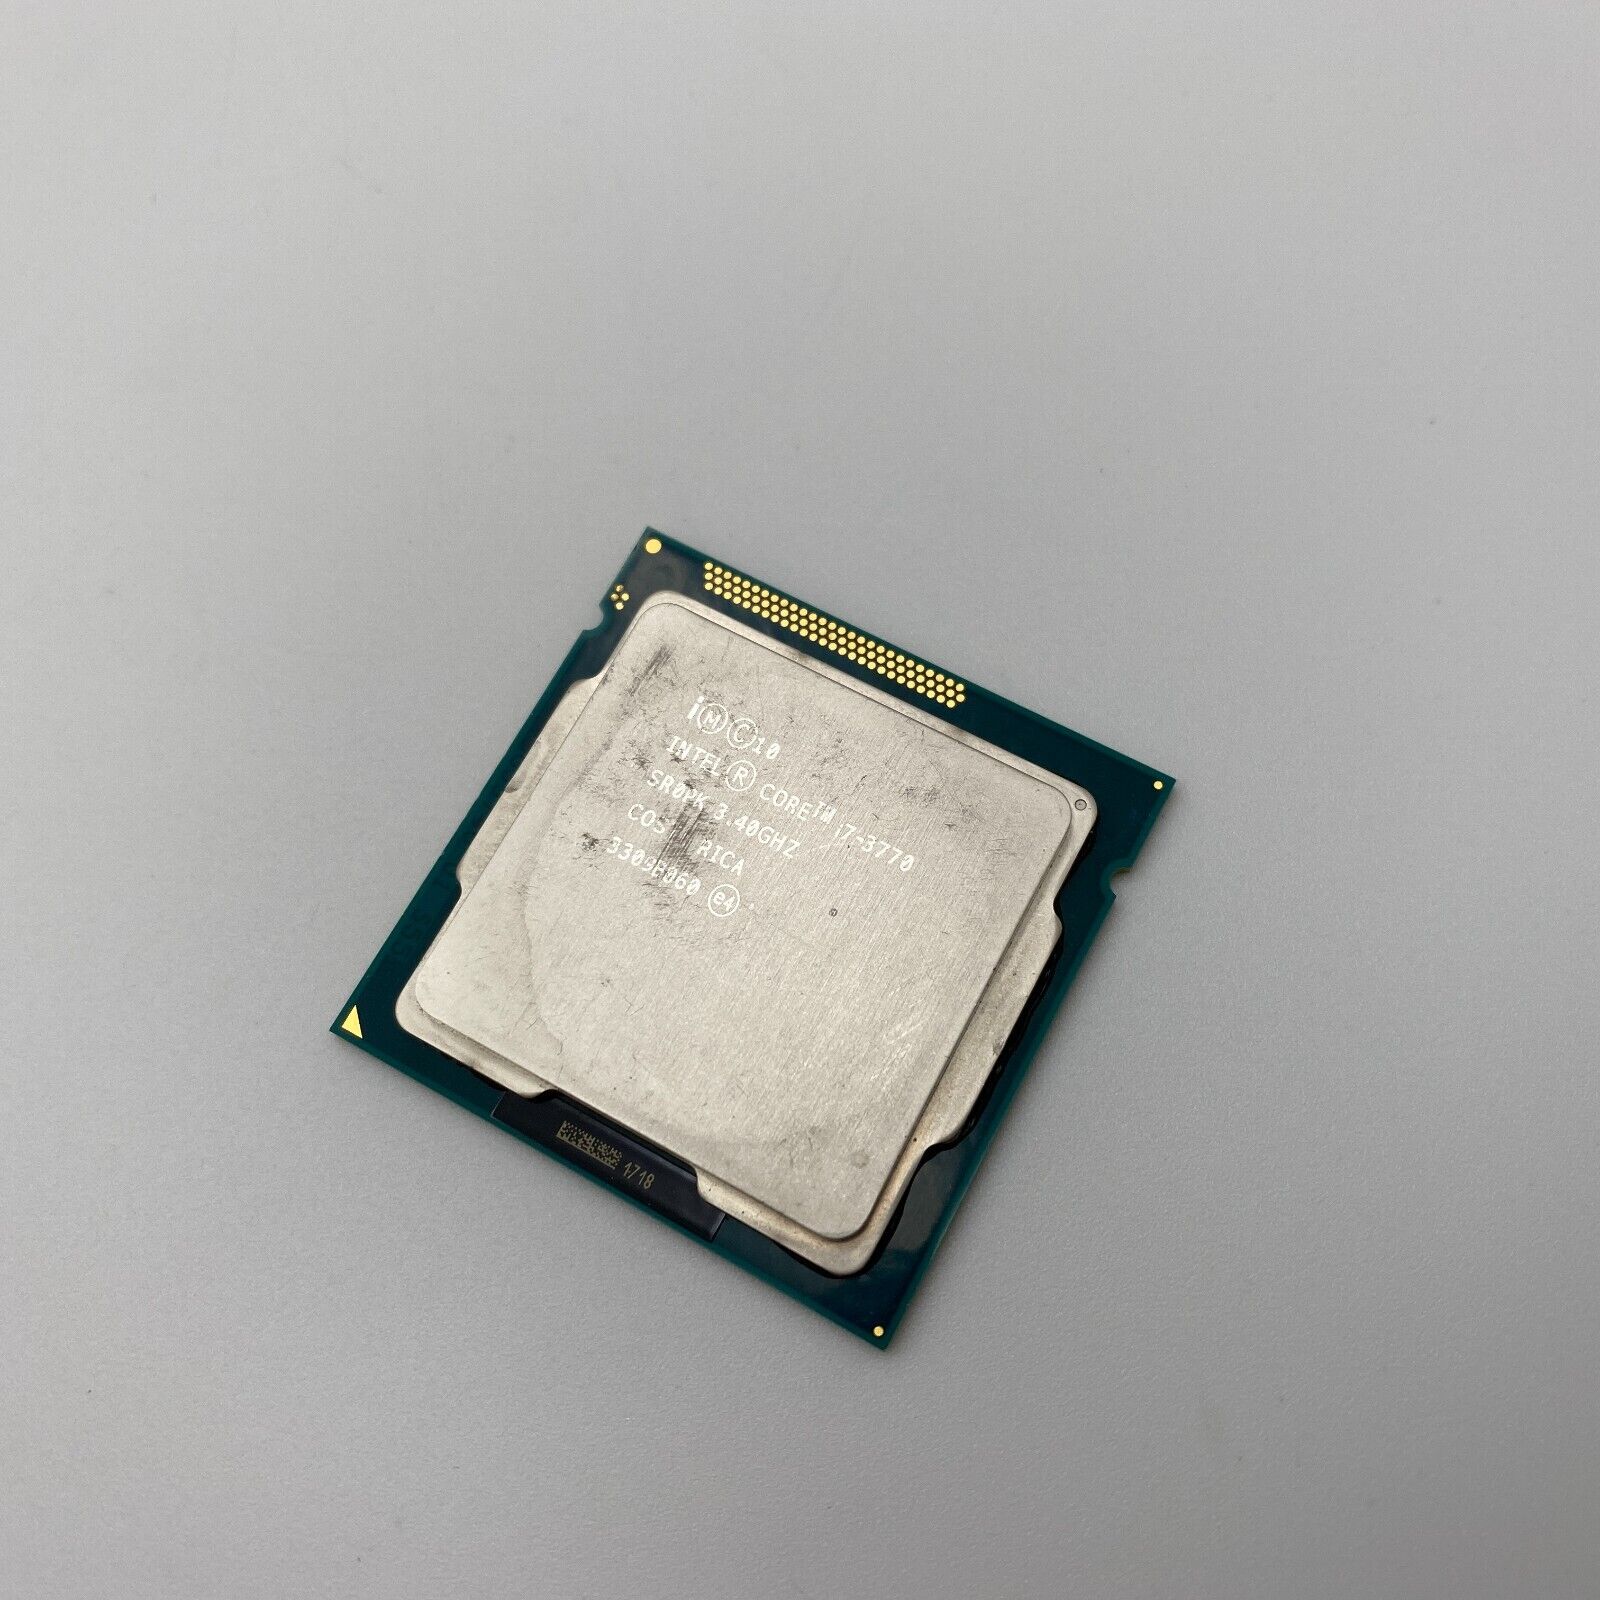 Intel Core i7-3770 Desktop Processor (3.4 GHz, 4 Cores, LGA 1155) Ivy Bridge